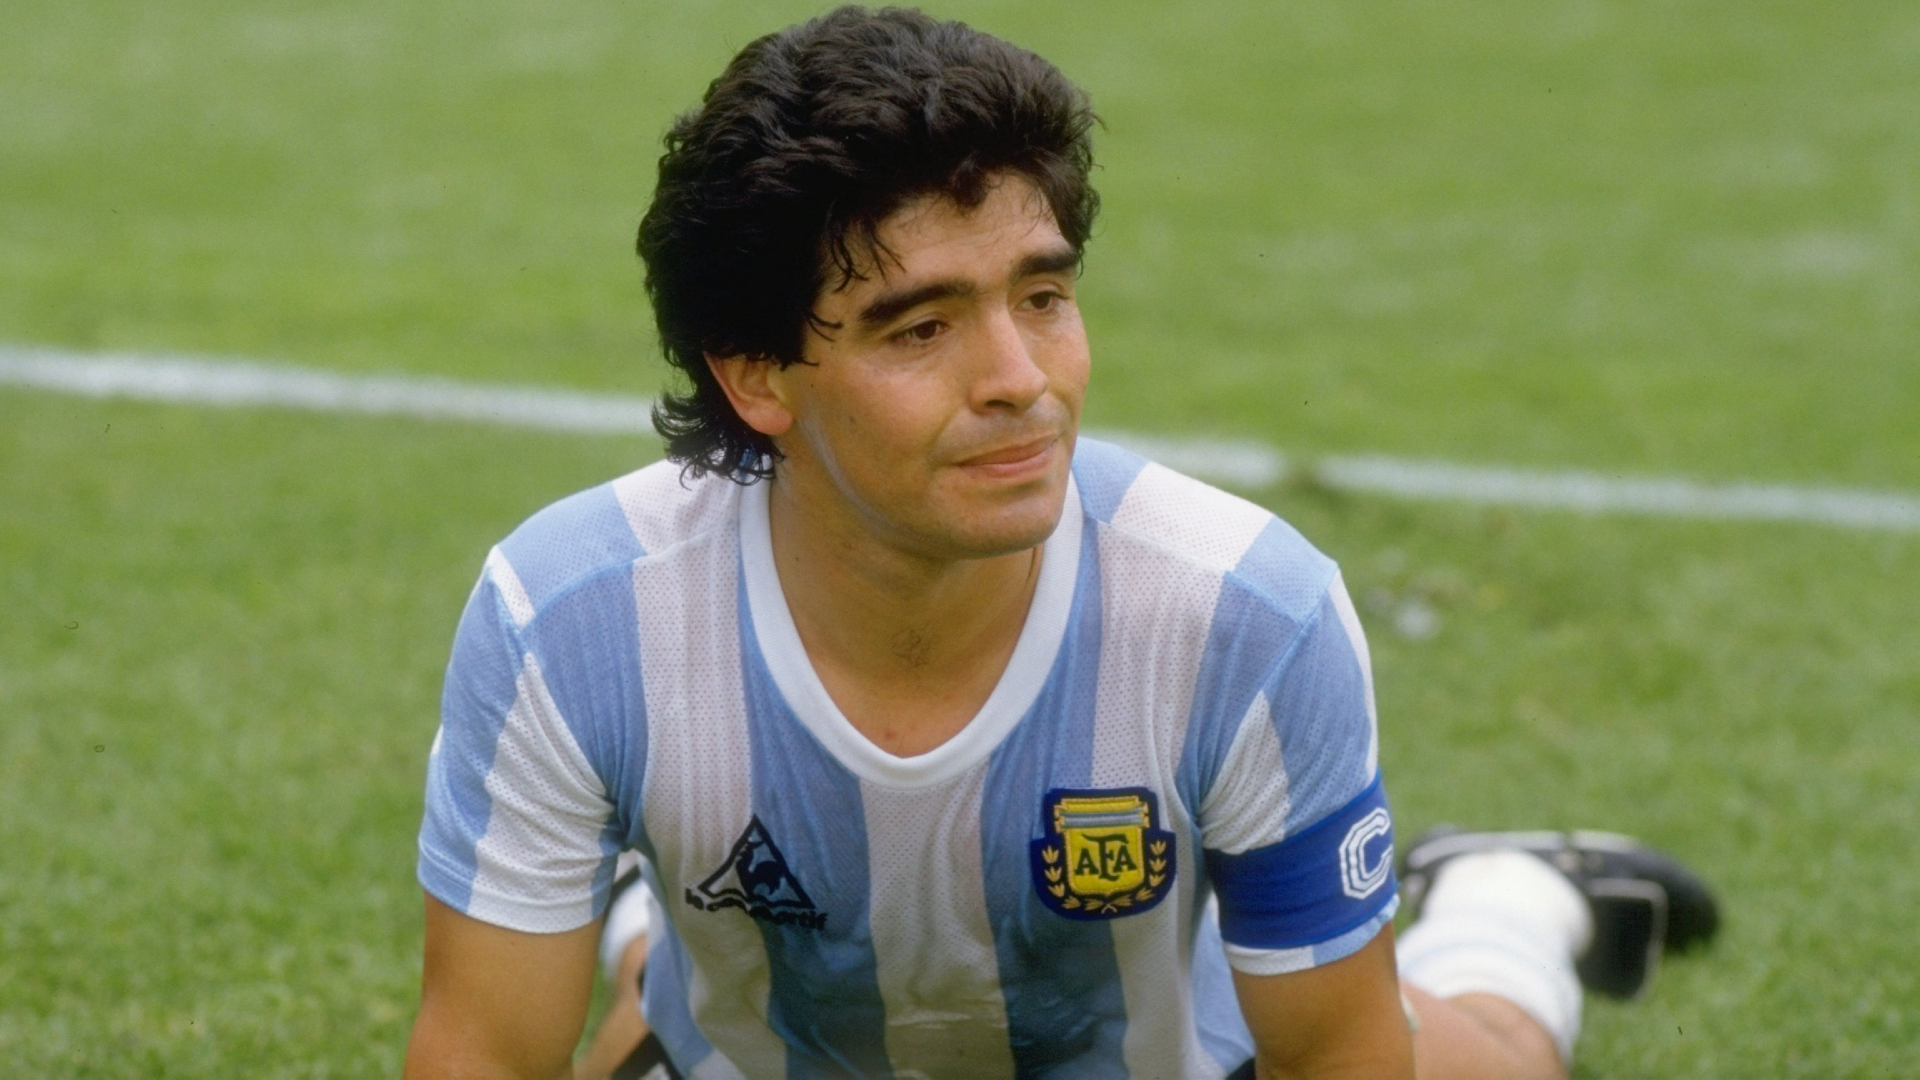 Maradona at 60: The star of Mexico 1986 – and